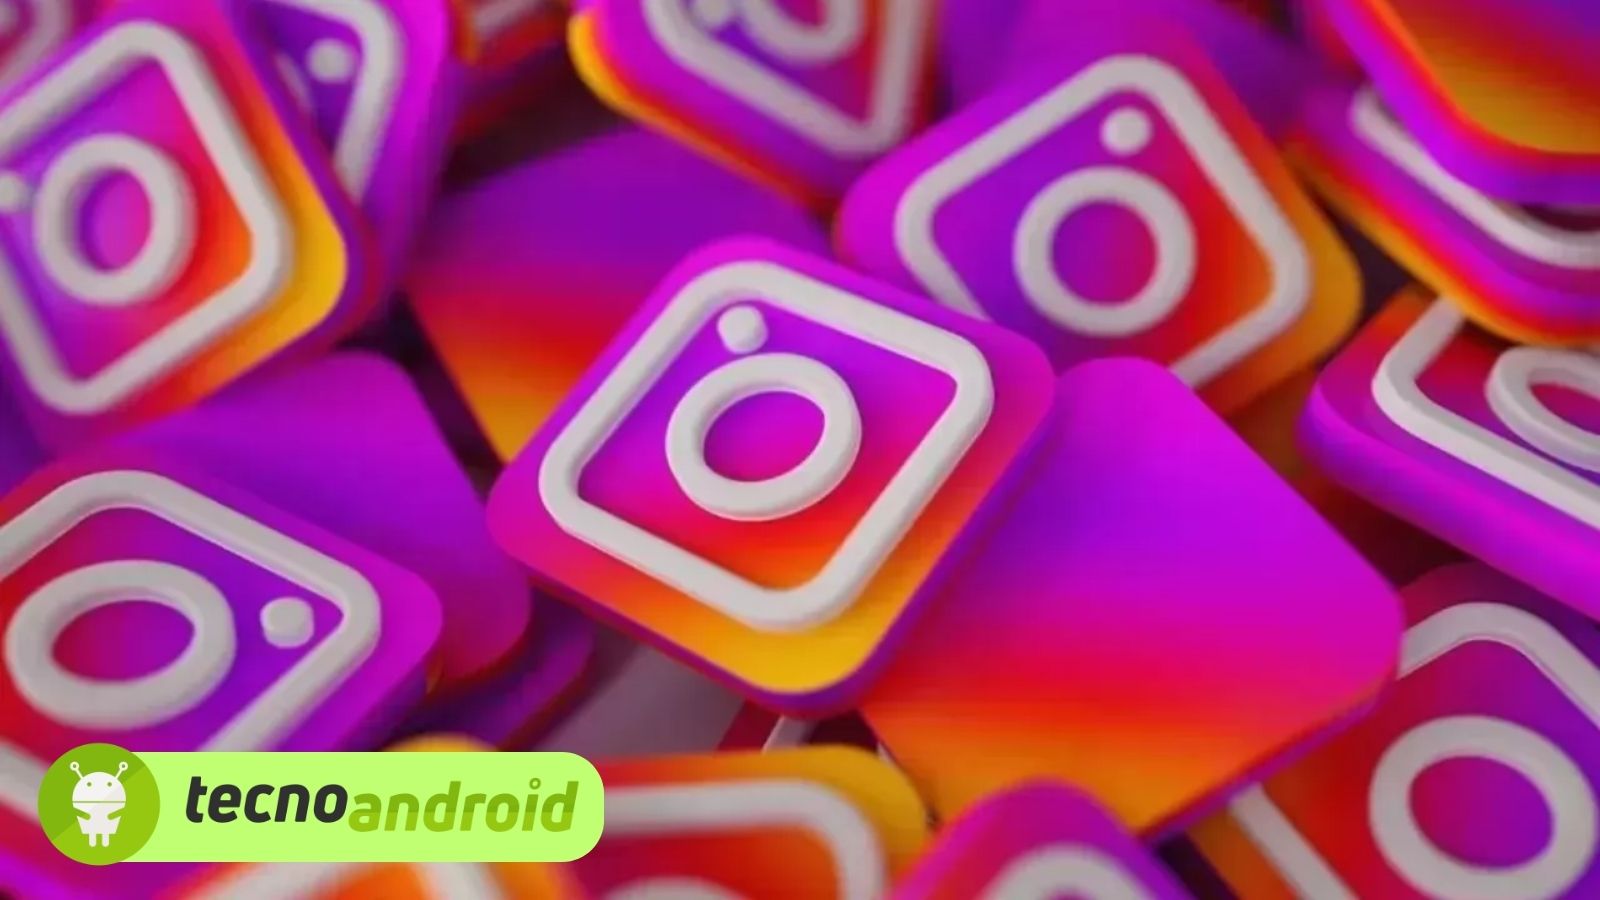 Scopriamo come caricare foto su Instagram in elevata qualità